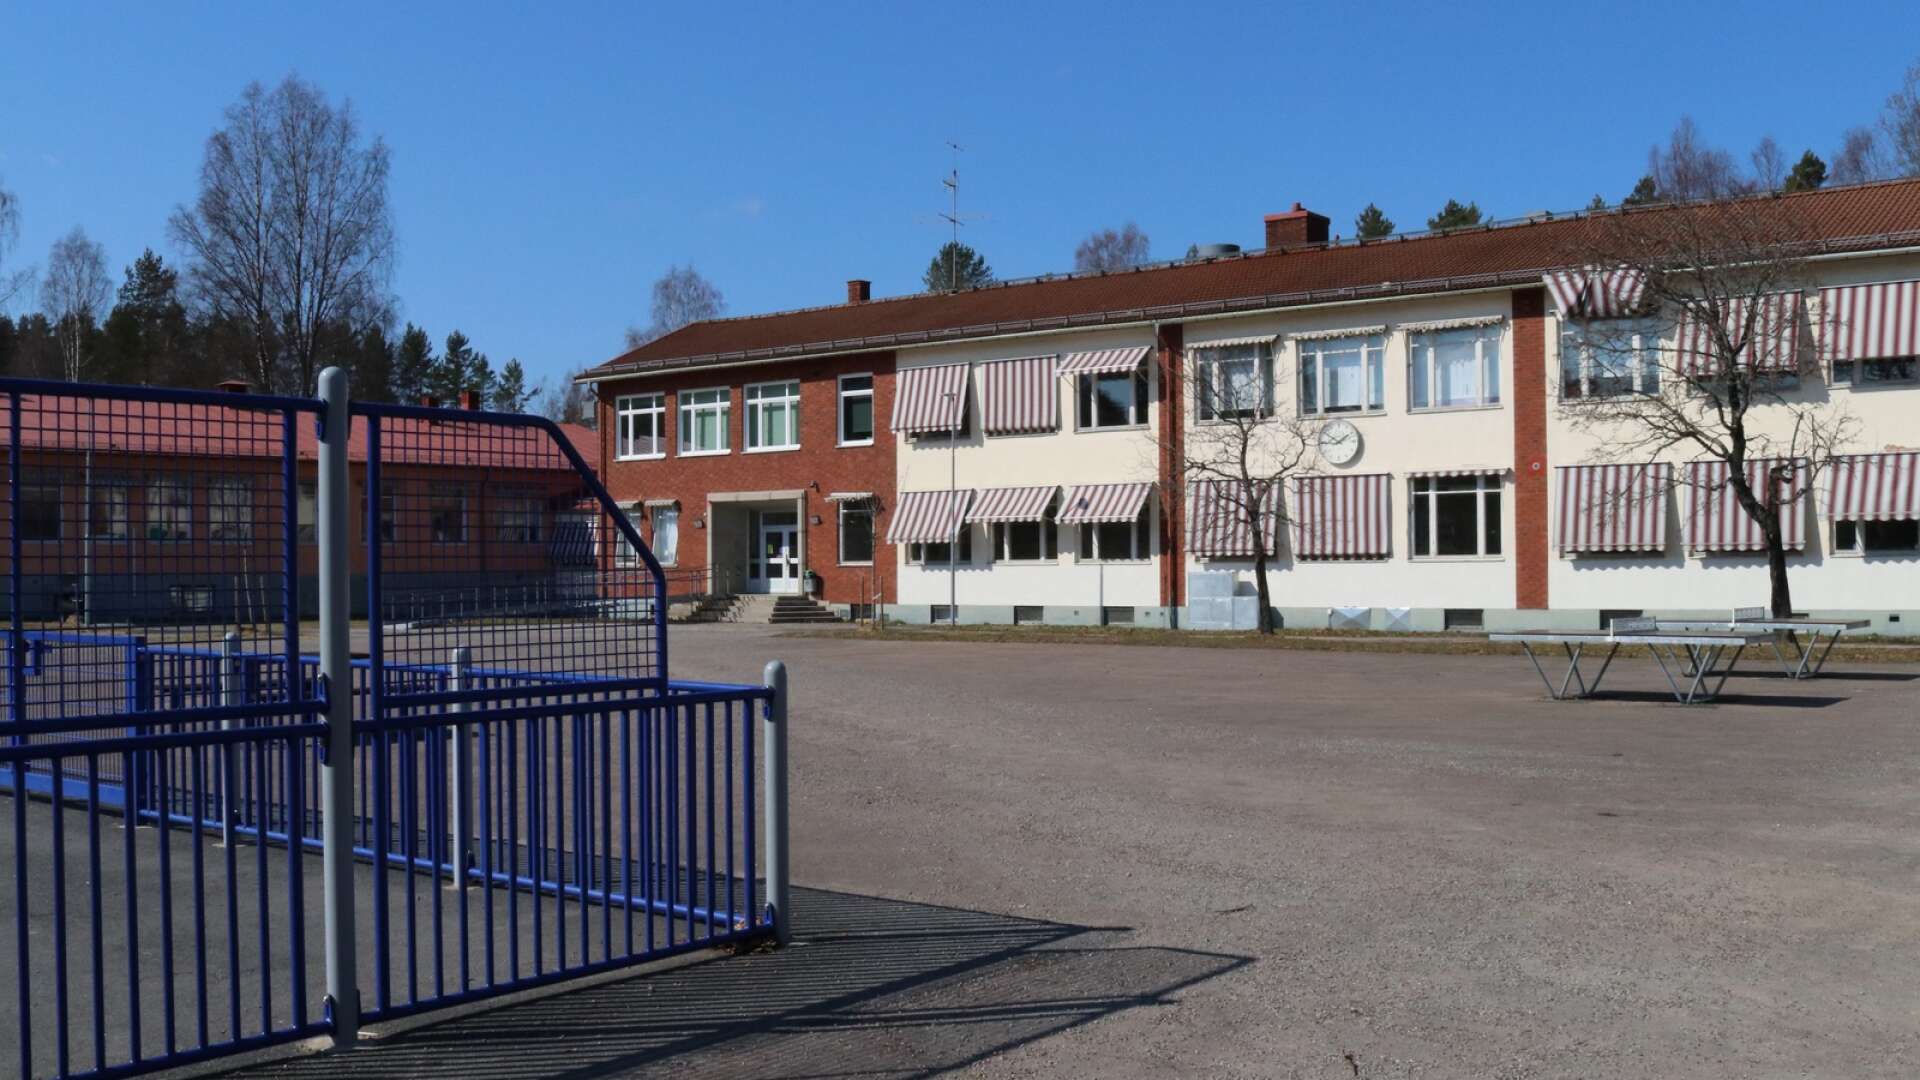 Fastighetsenheten har föreslagit teknikutskottet att besluta om ett fönsterbyte på Stålvallaskolan.